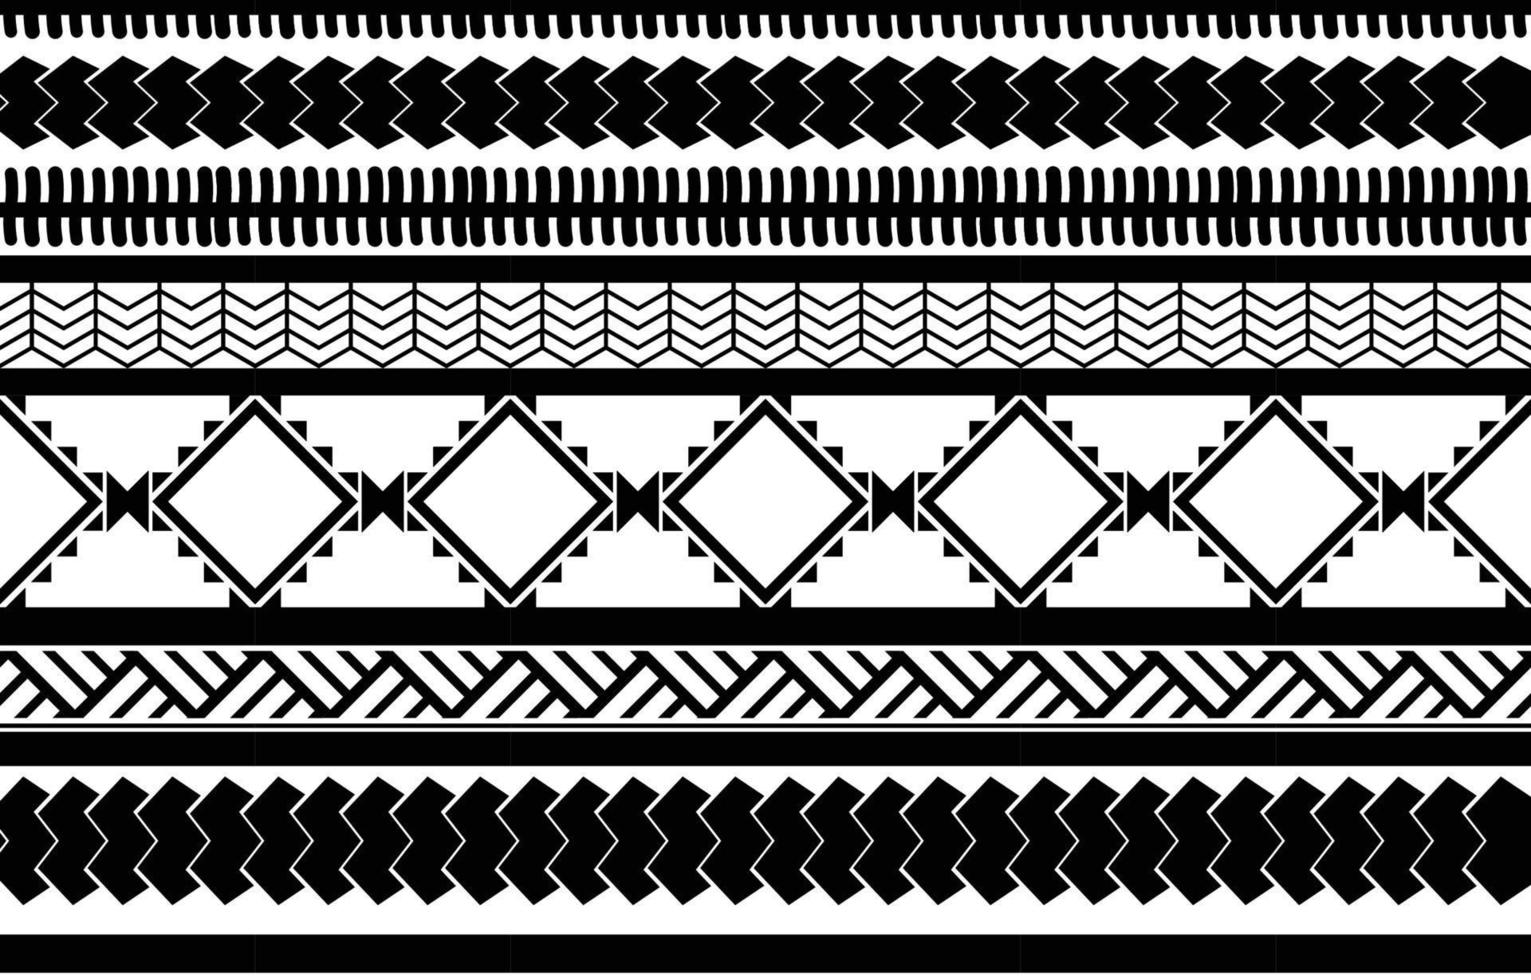 Afrikaanse tribal zwart-wit abstracte etnische geometrische patroon. ontwerp voor achtergrond of wallpaper.vector illustratie om stofpatronen, vloerkleden, overhemden, kostuums, tulband, hoeden, gordijnen af te drukken. vector